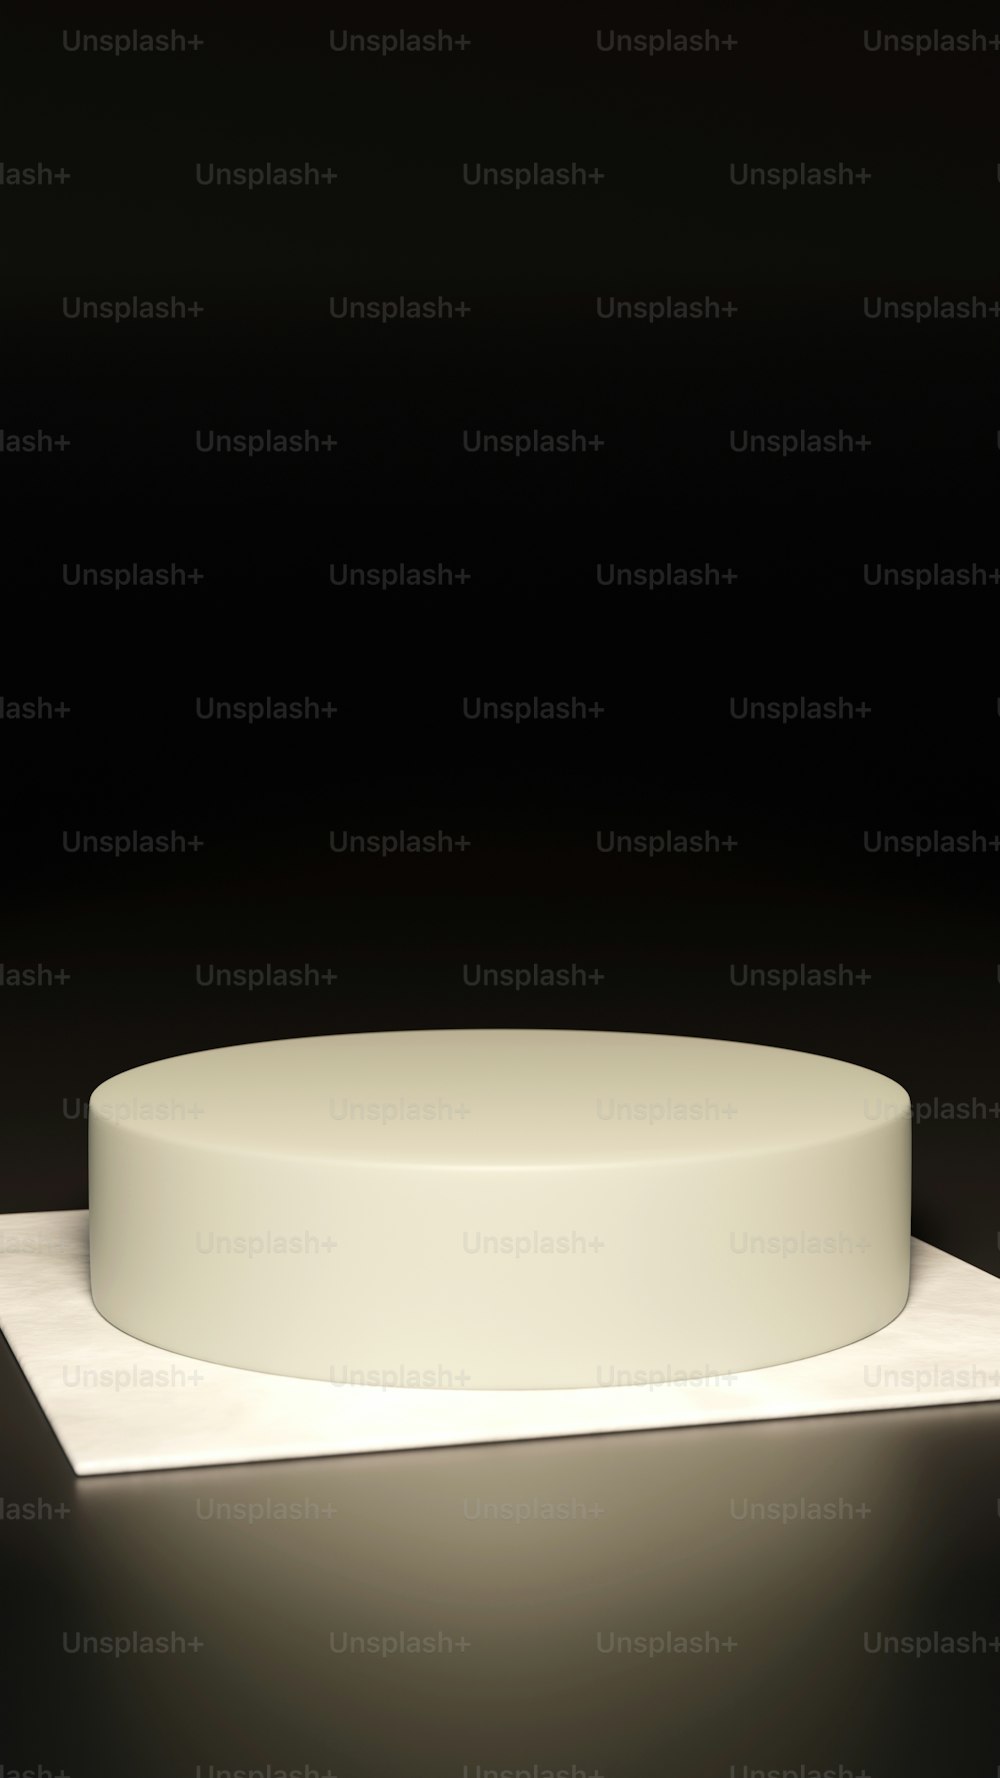 테이블 위에 앉아 있는 흰색 둥근 물체